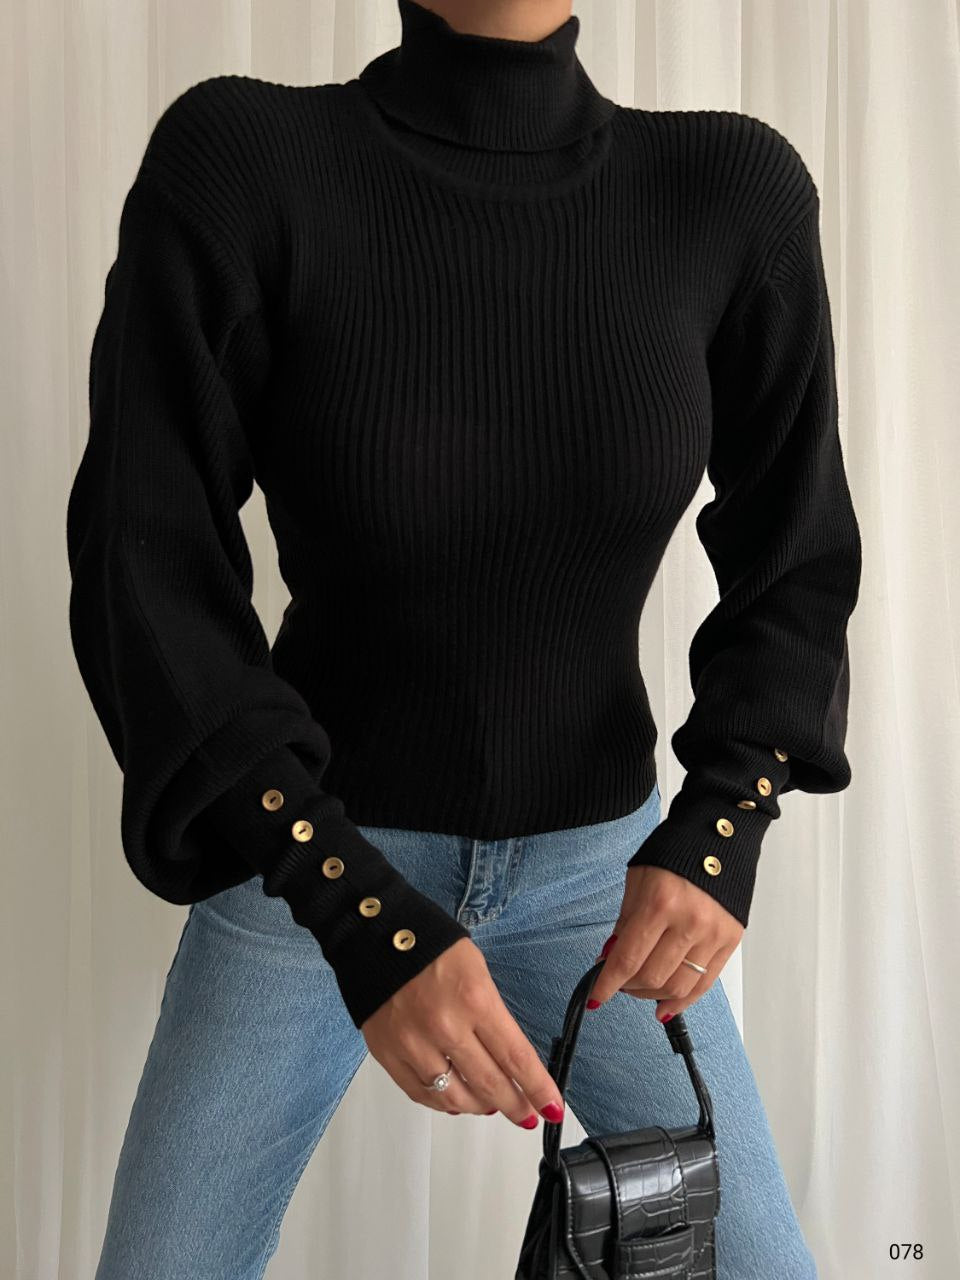 Дамска блуза SEMIRA  https://bvseductive.com/products/дамска-блуза-semira  дамска блуза в черен цвят модел по тялото с поло яка фино плетен рипс и красив ръкав стил и удобство във ежедневието